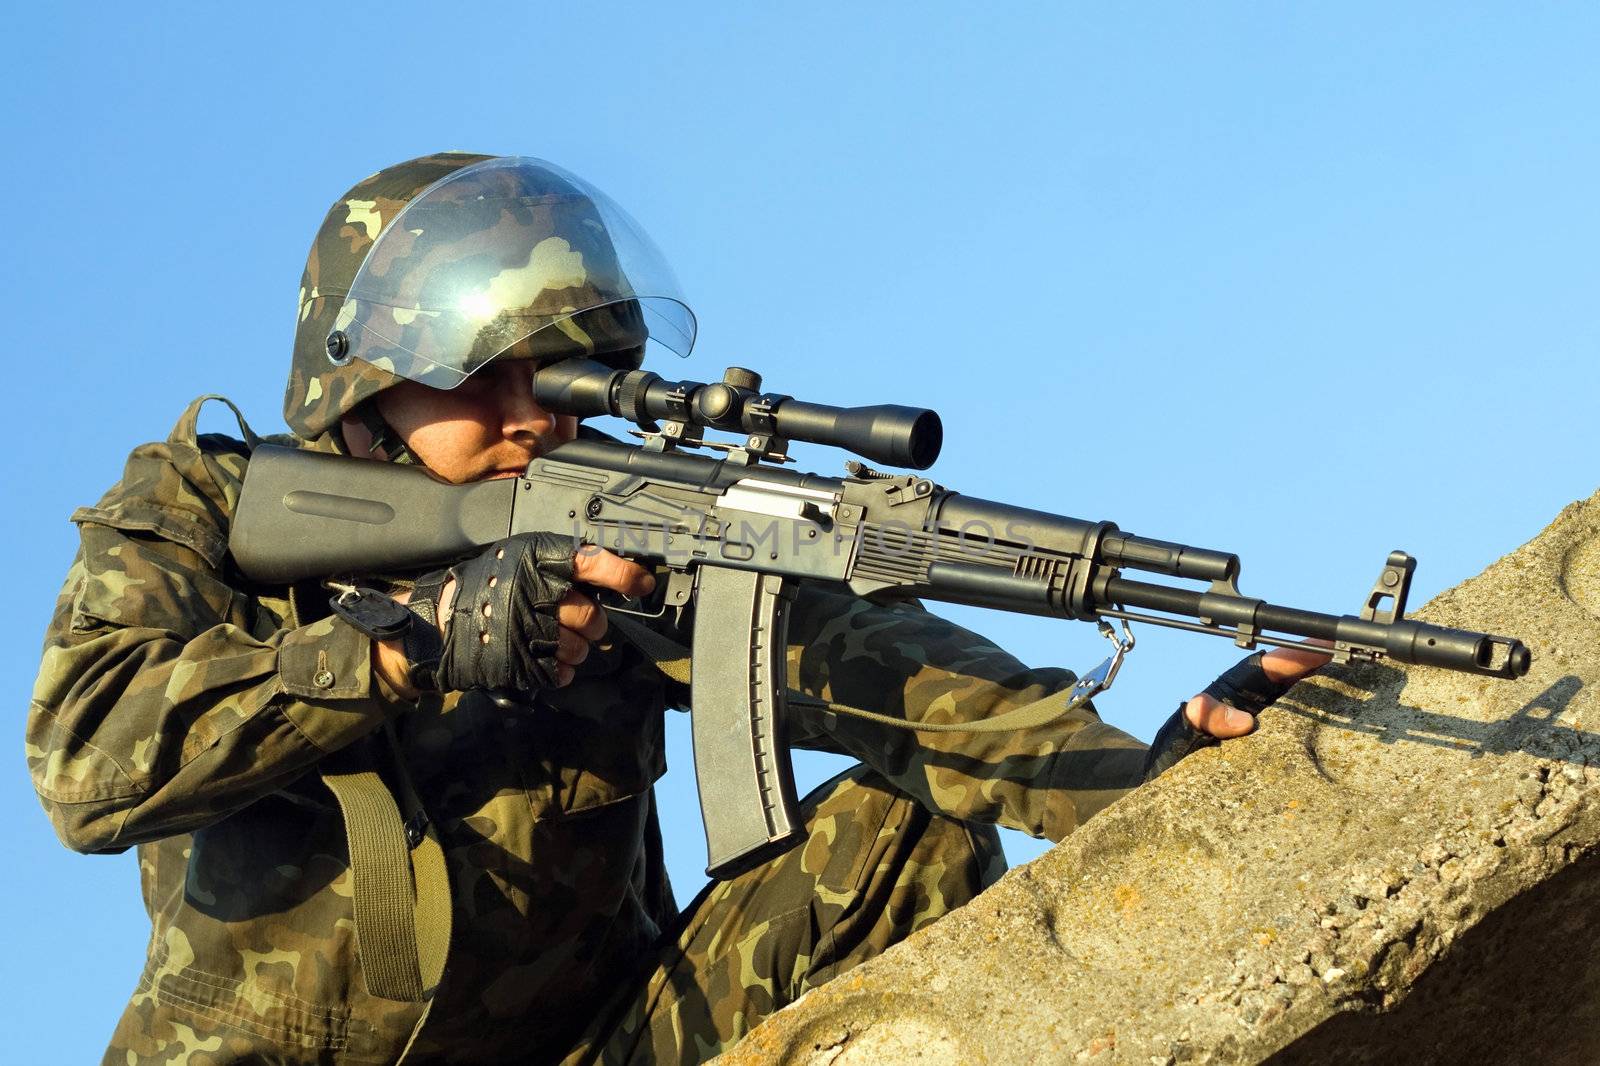 Soldier with machine gun waiting in ambush